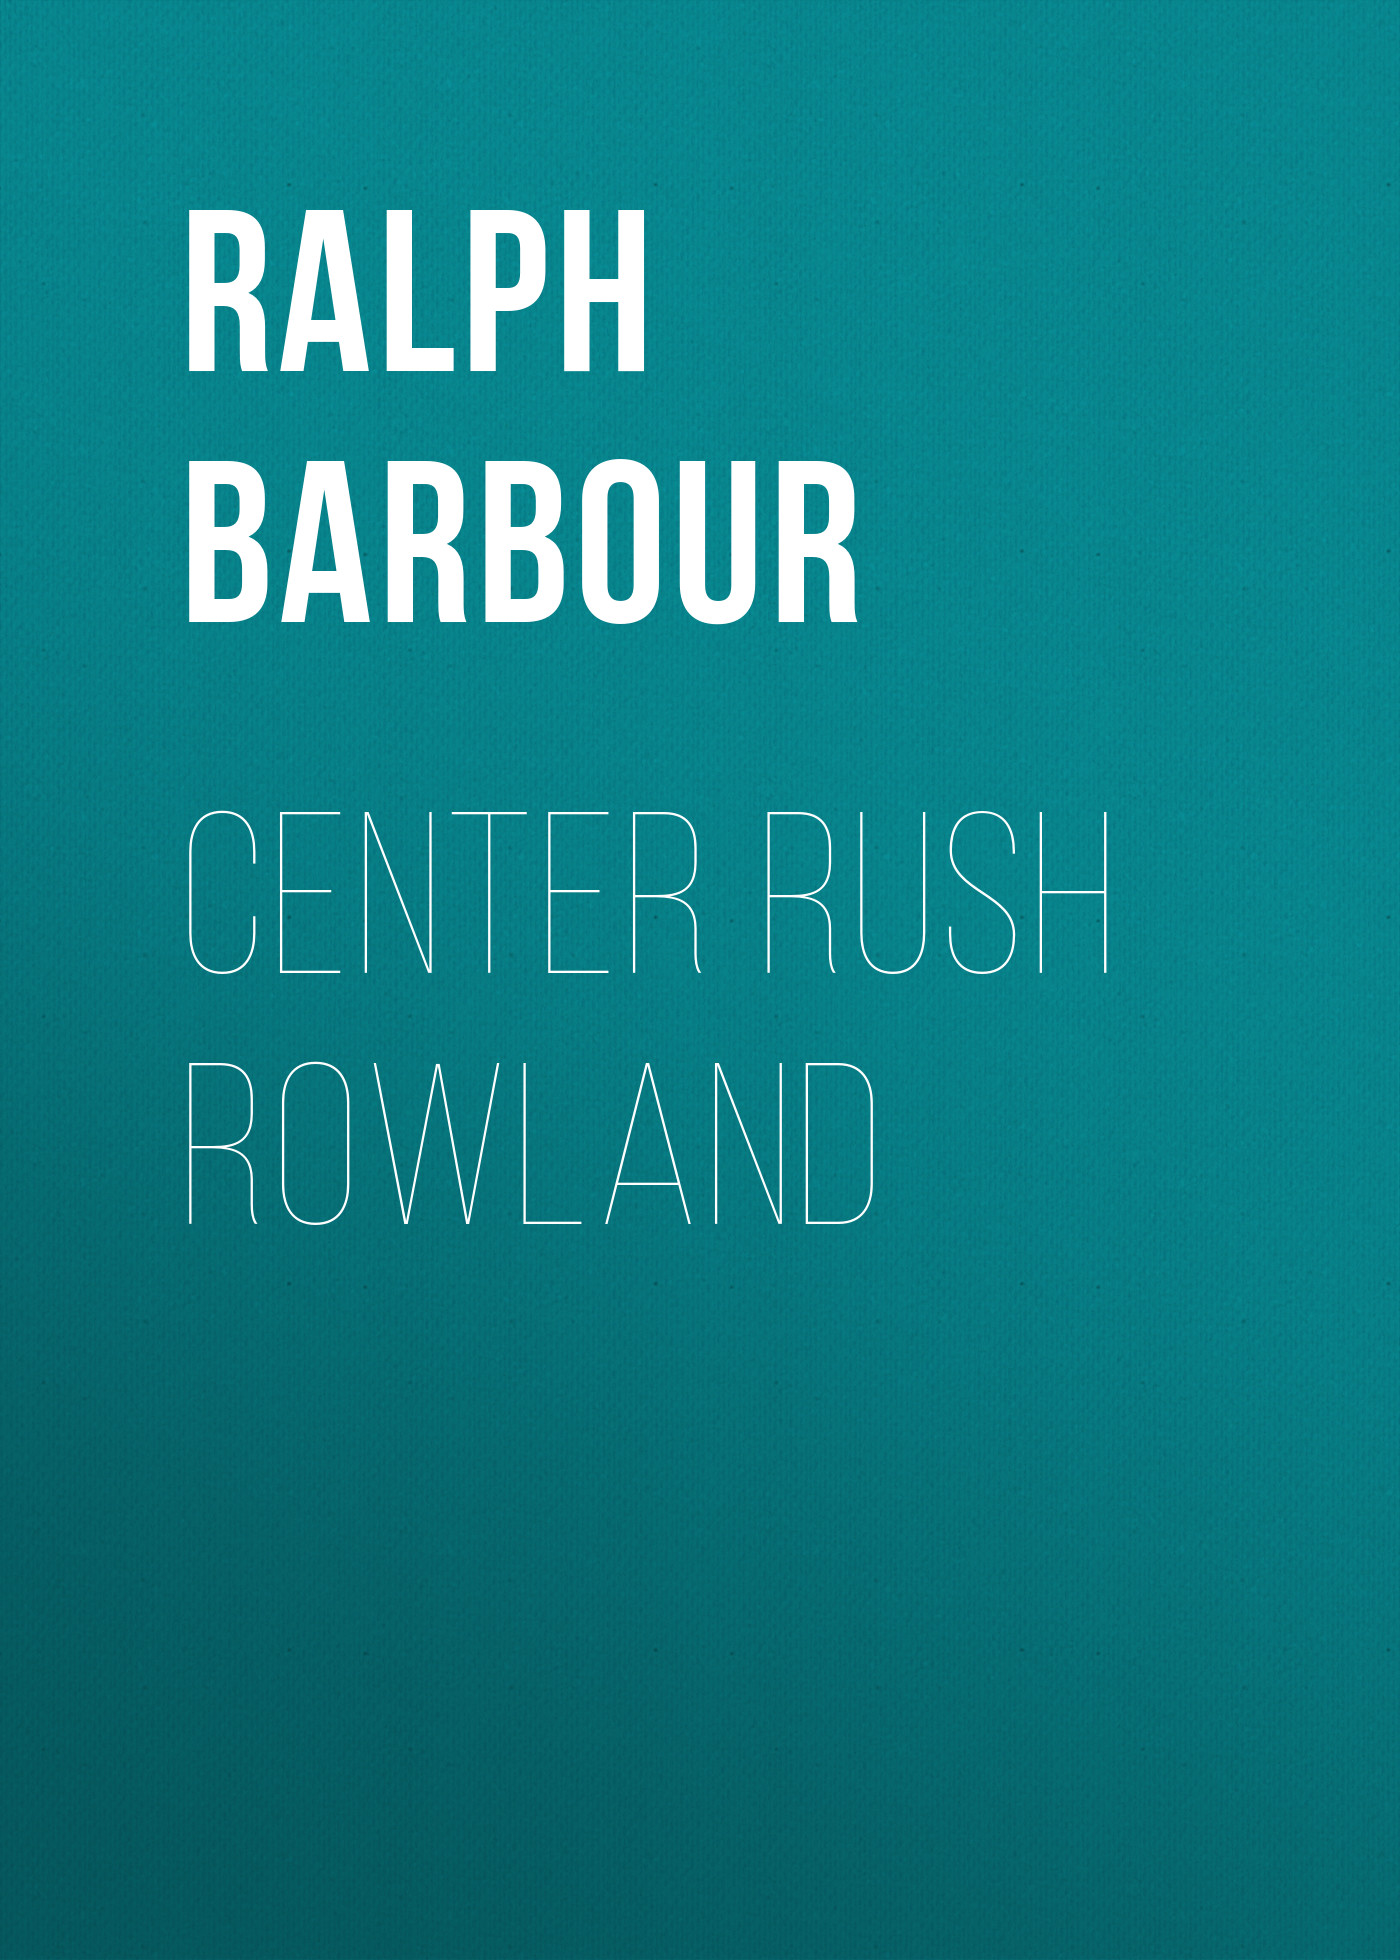 Книга Center Rush Rowland из серии , созданная Ralph Barbour, может относится к жанру Зарубежная классика, Зарубежные детские книги. Стоимость электронной книги Center Rush Rowland с идентификатором 23165131 составляет 5.99 руб.